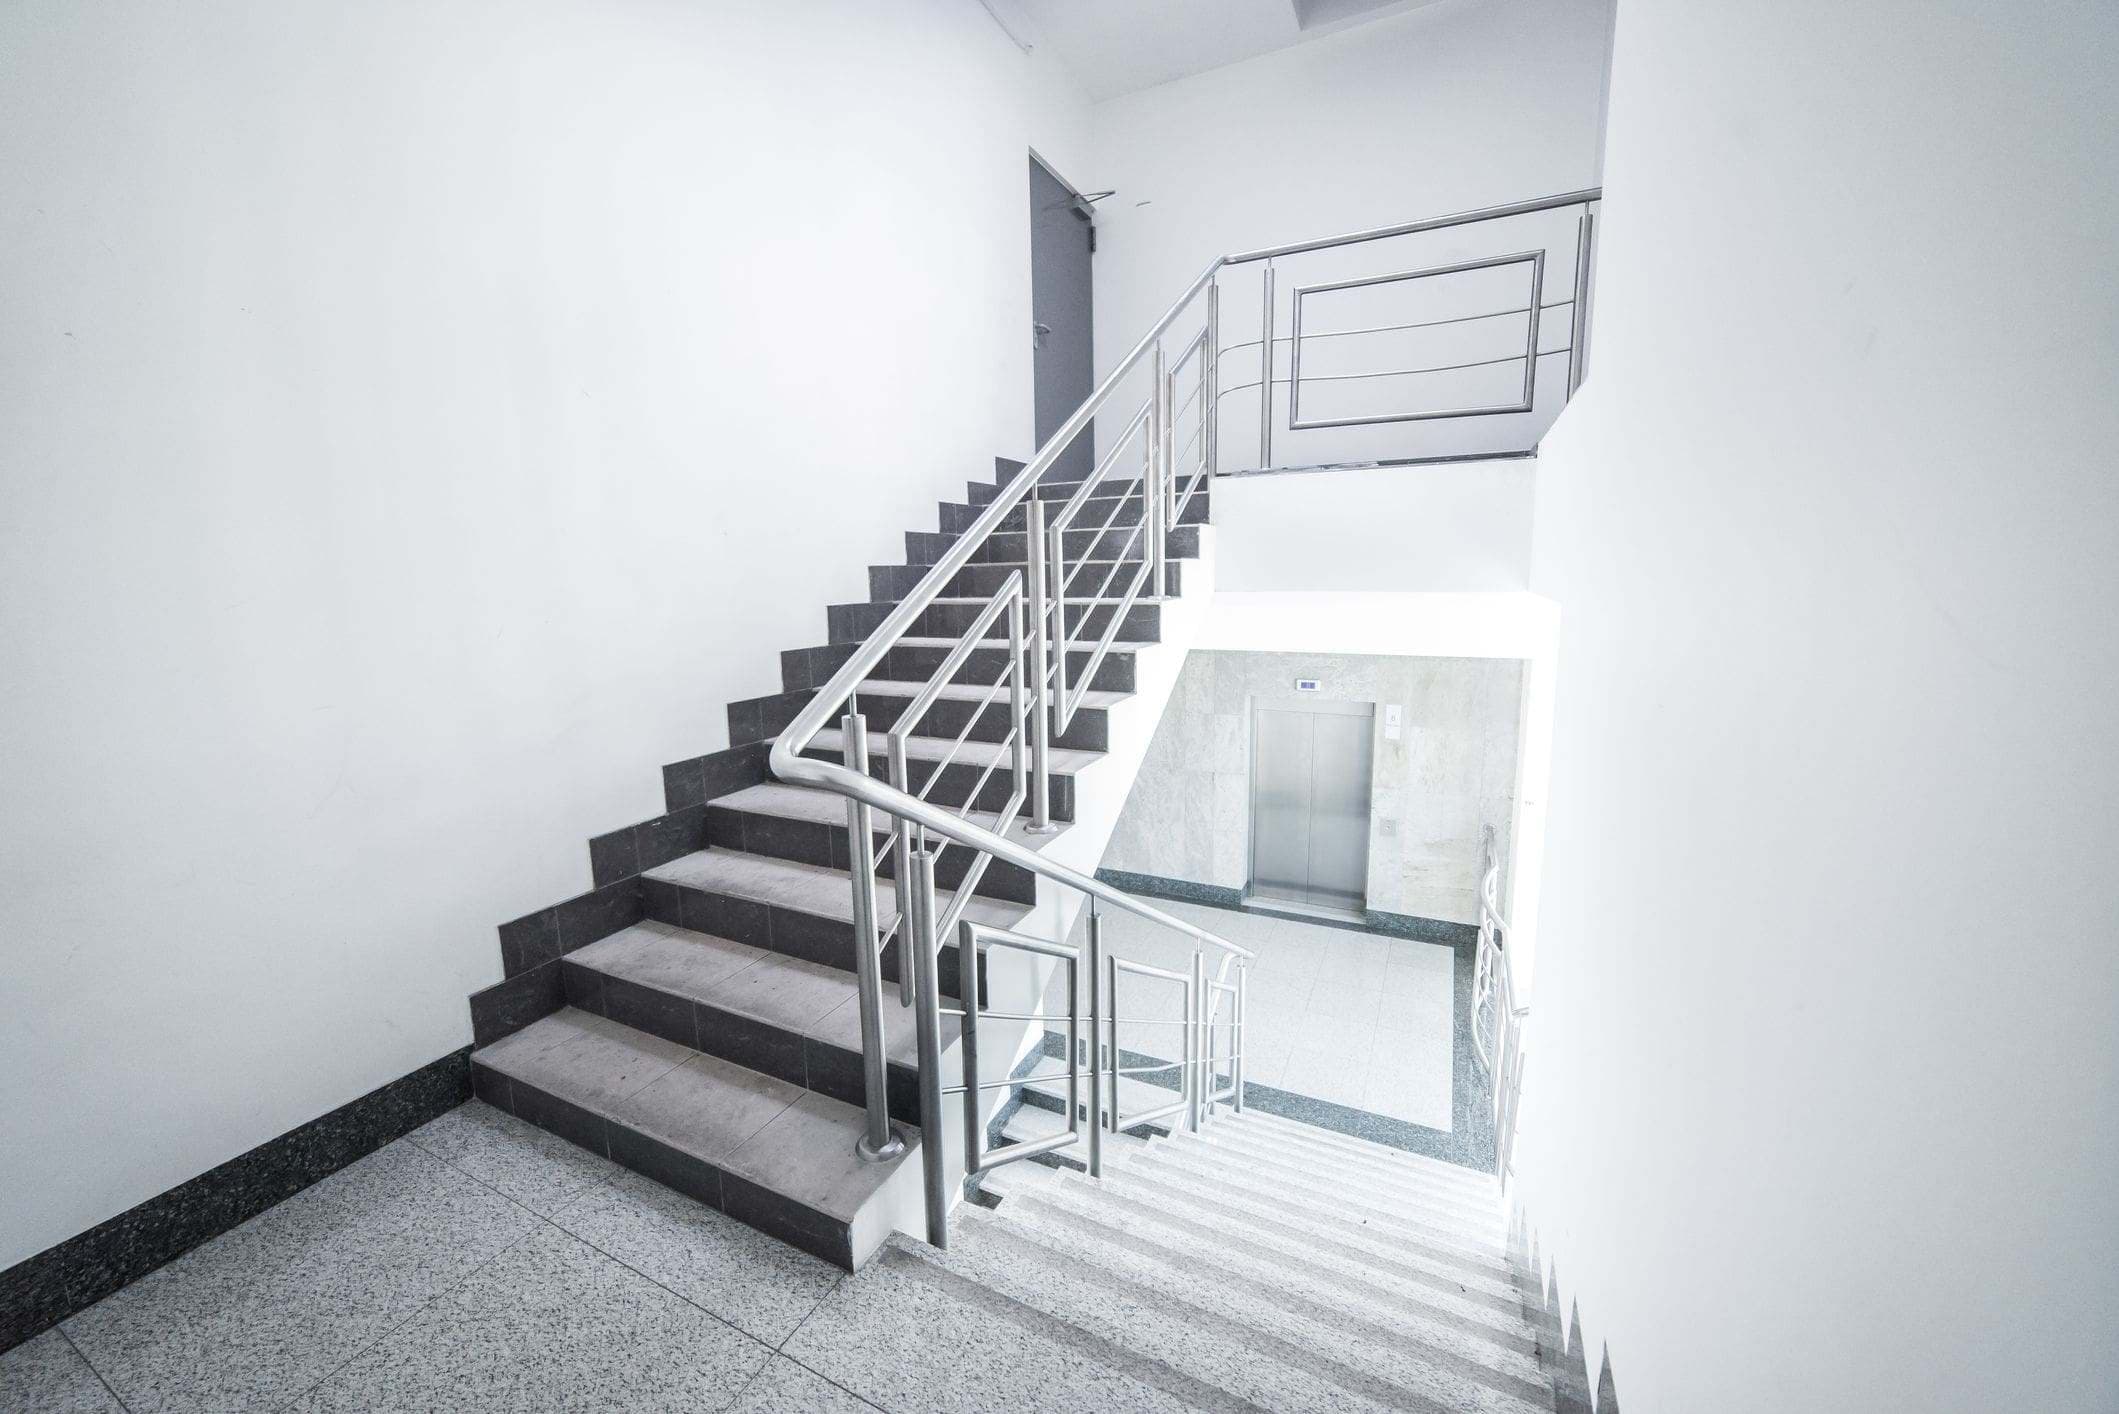 interior stairwell fire escape access 